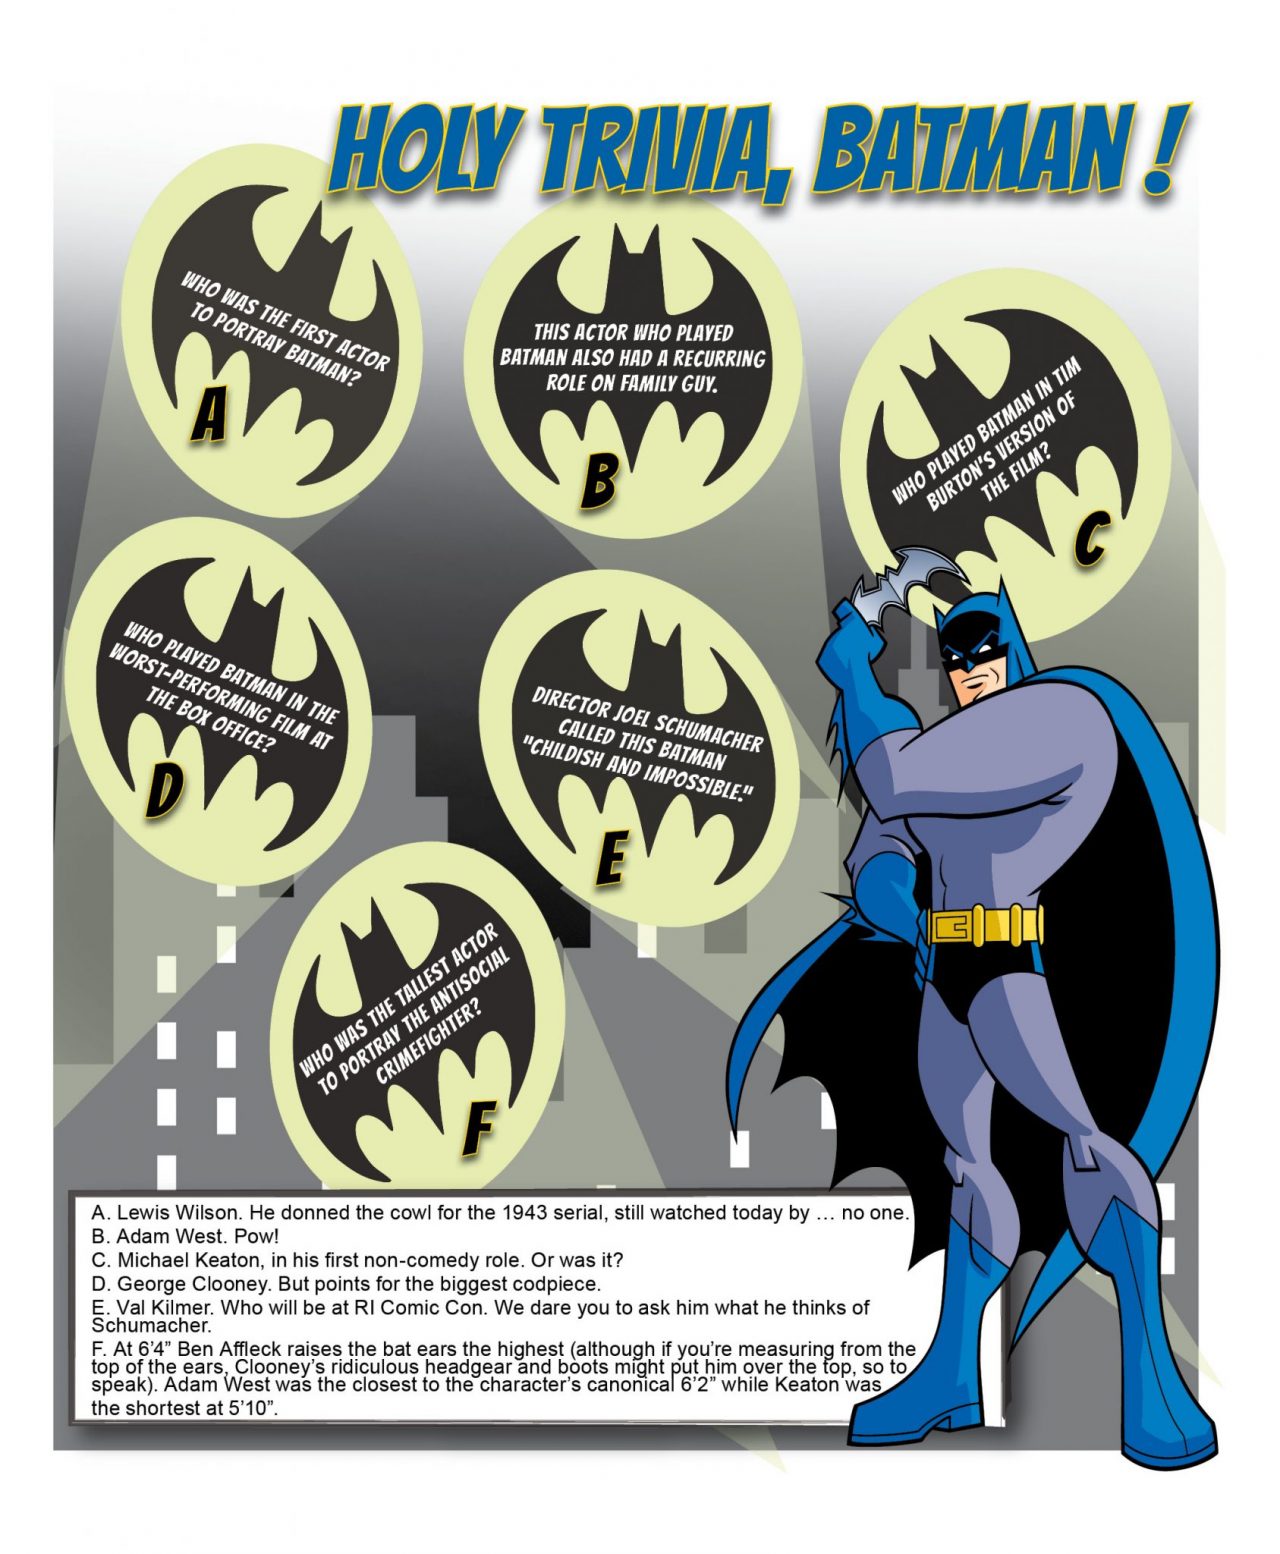 Batman trivia for web